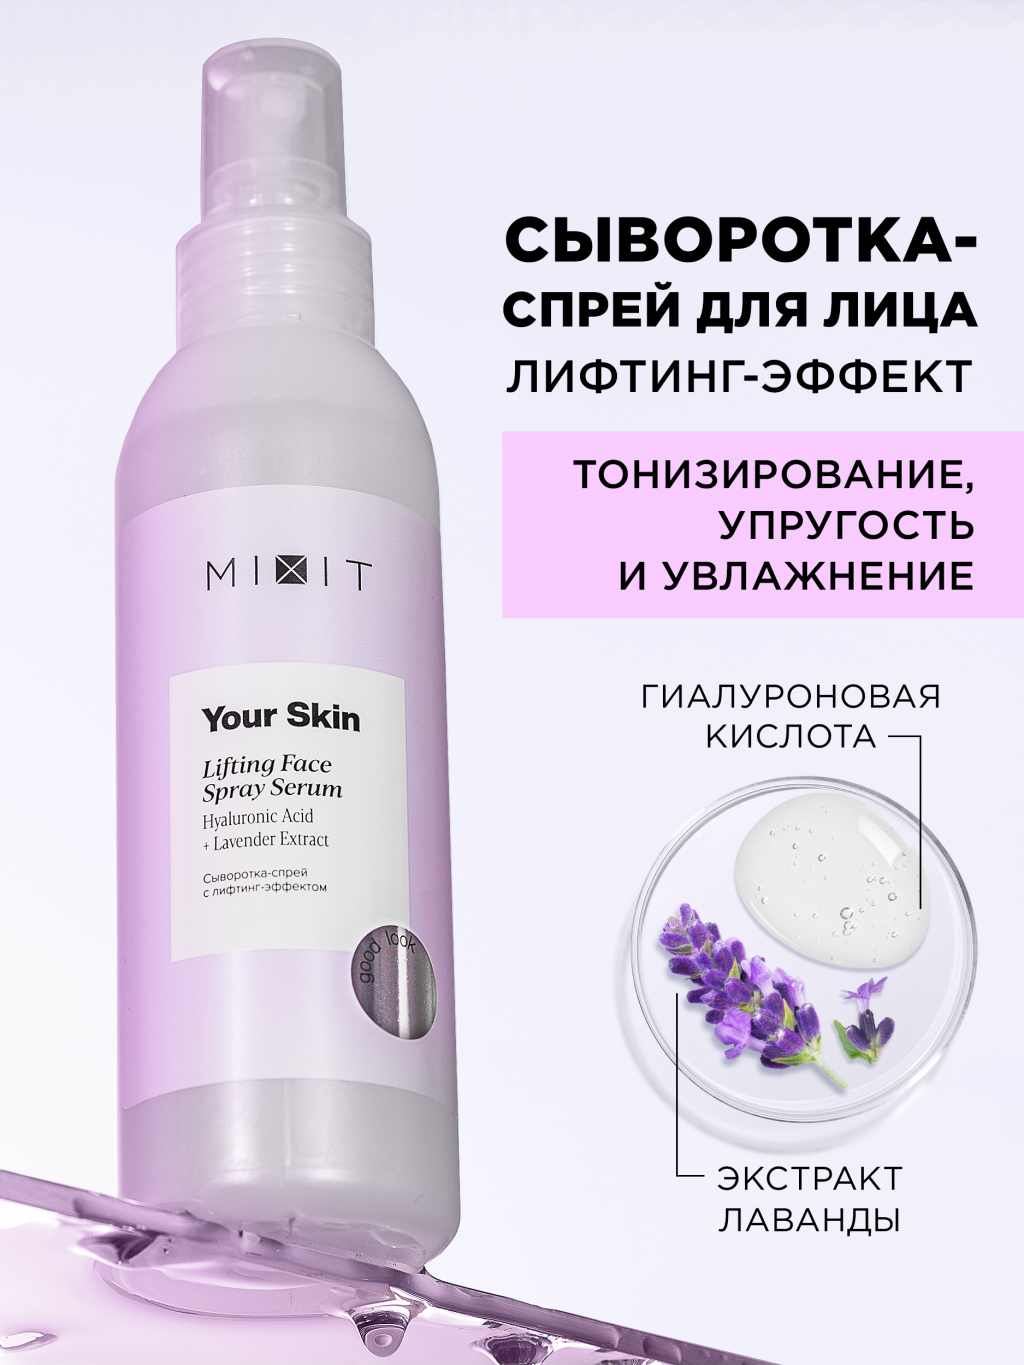 Сыворотка-спрей для лица Mixit Your Skin с лифтинг-эффектом, 150 мл